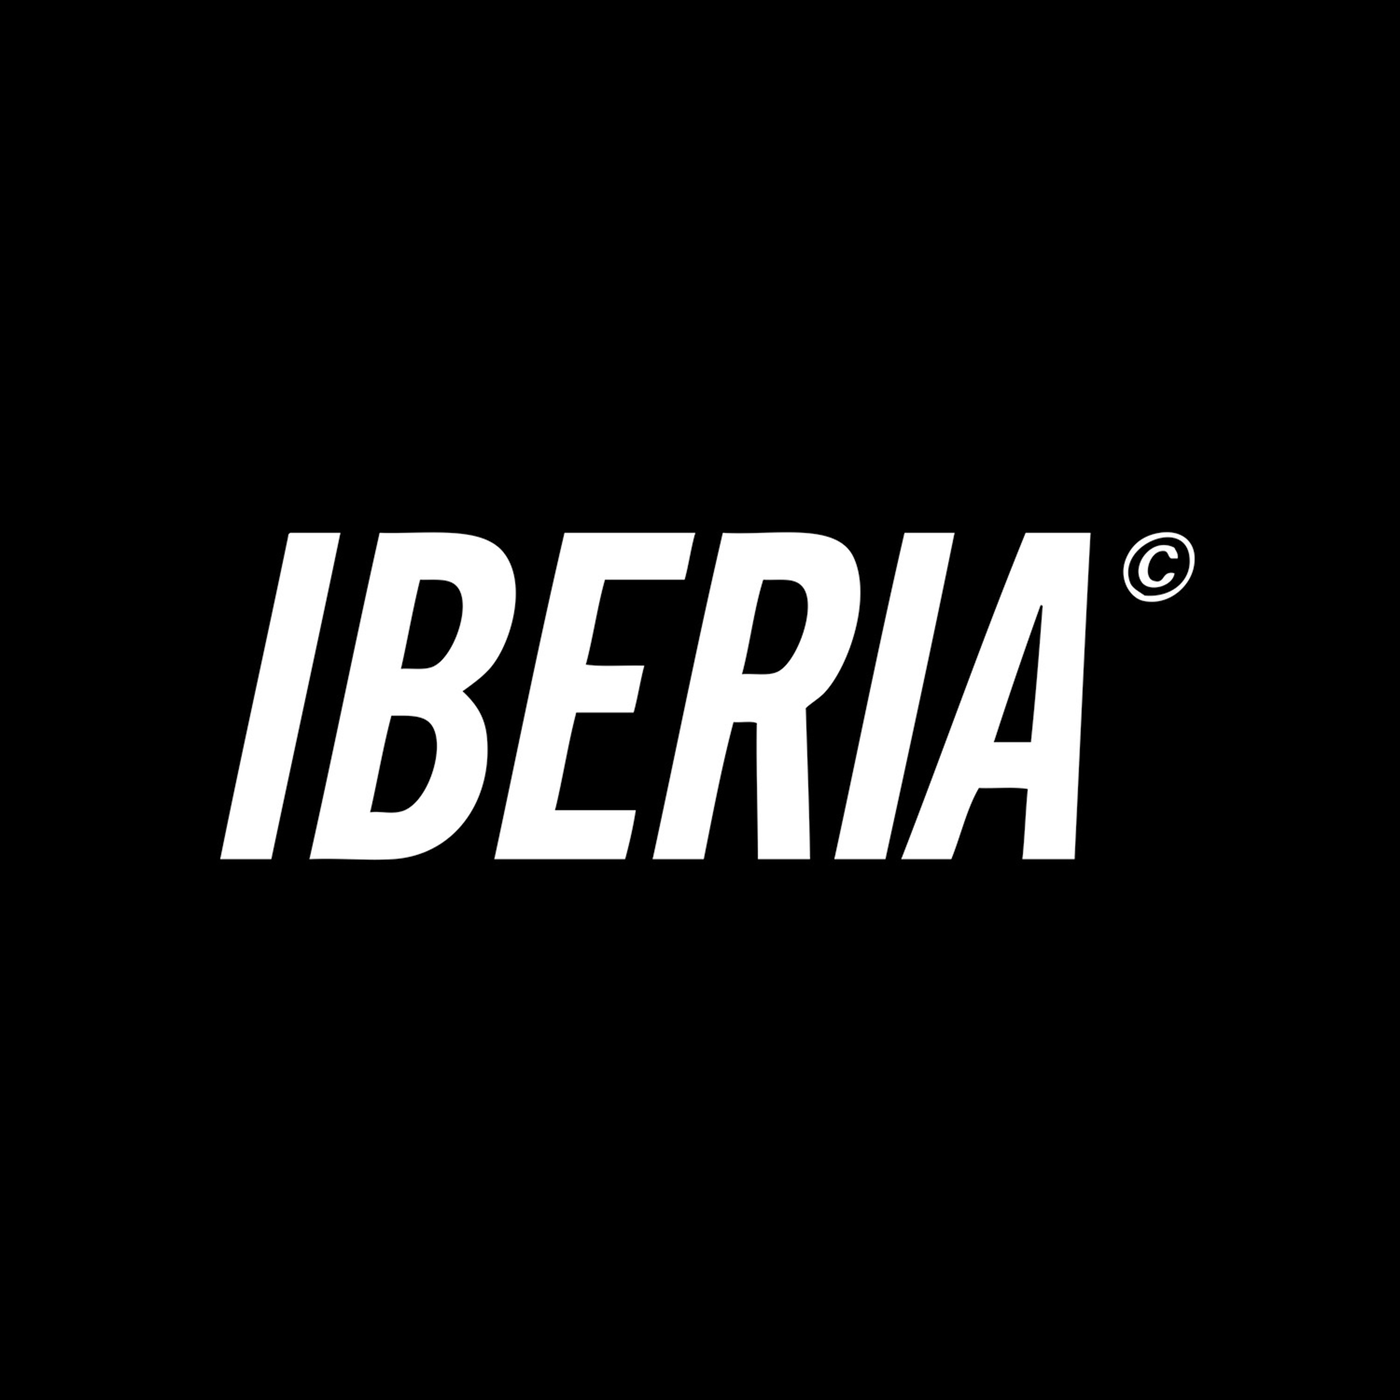 Iberia – S/T